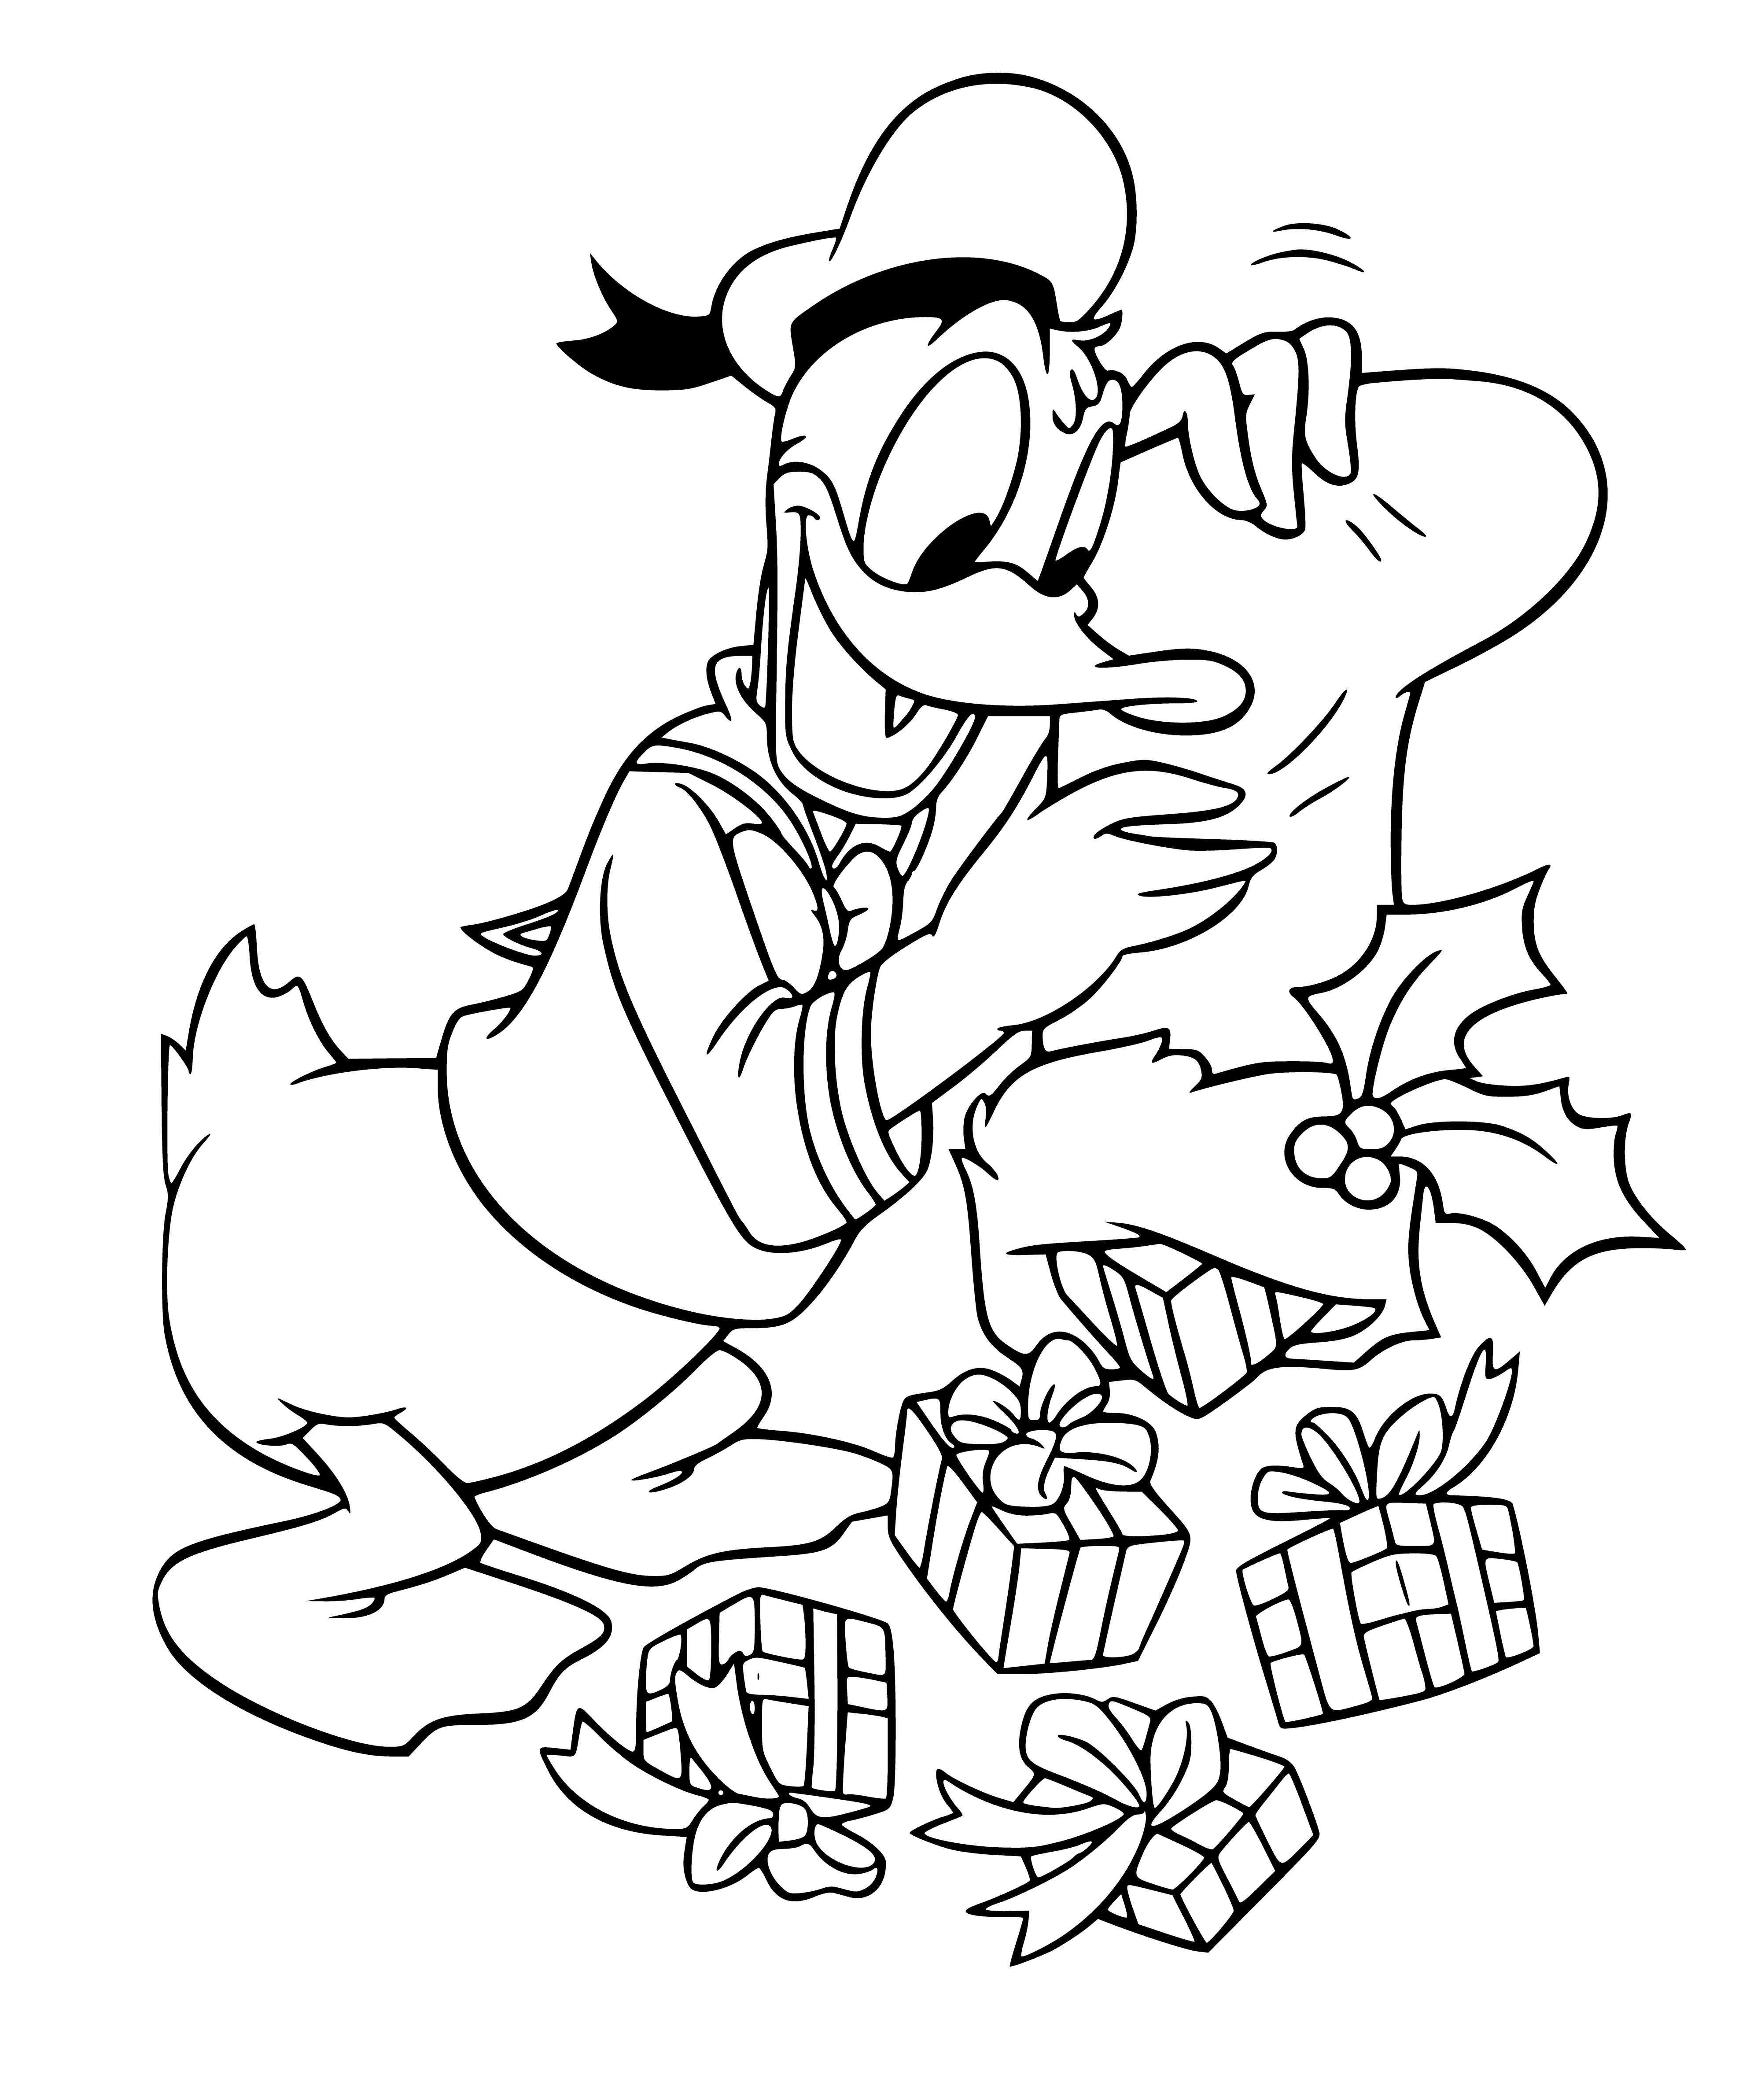 Donald ve hediyeler boyama sayfası